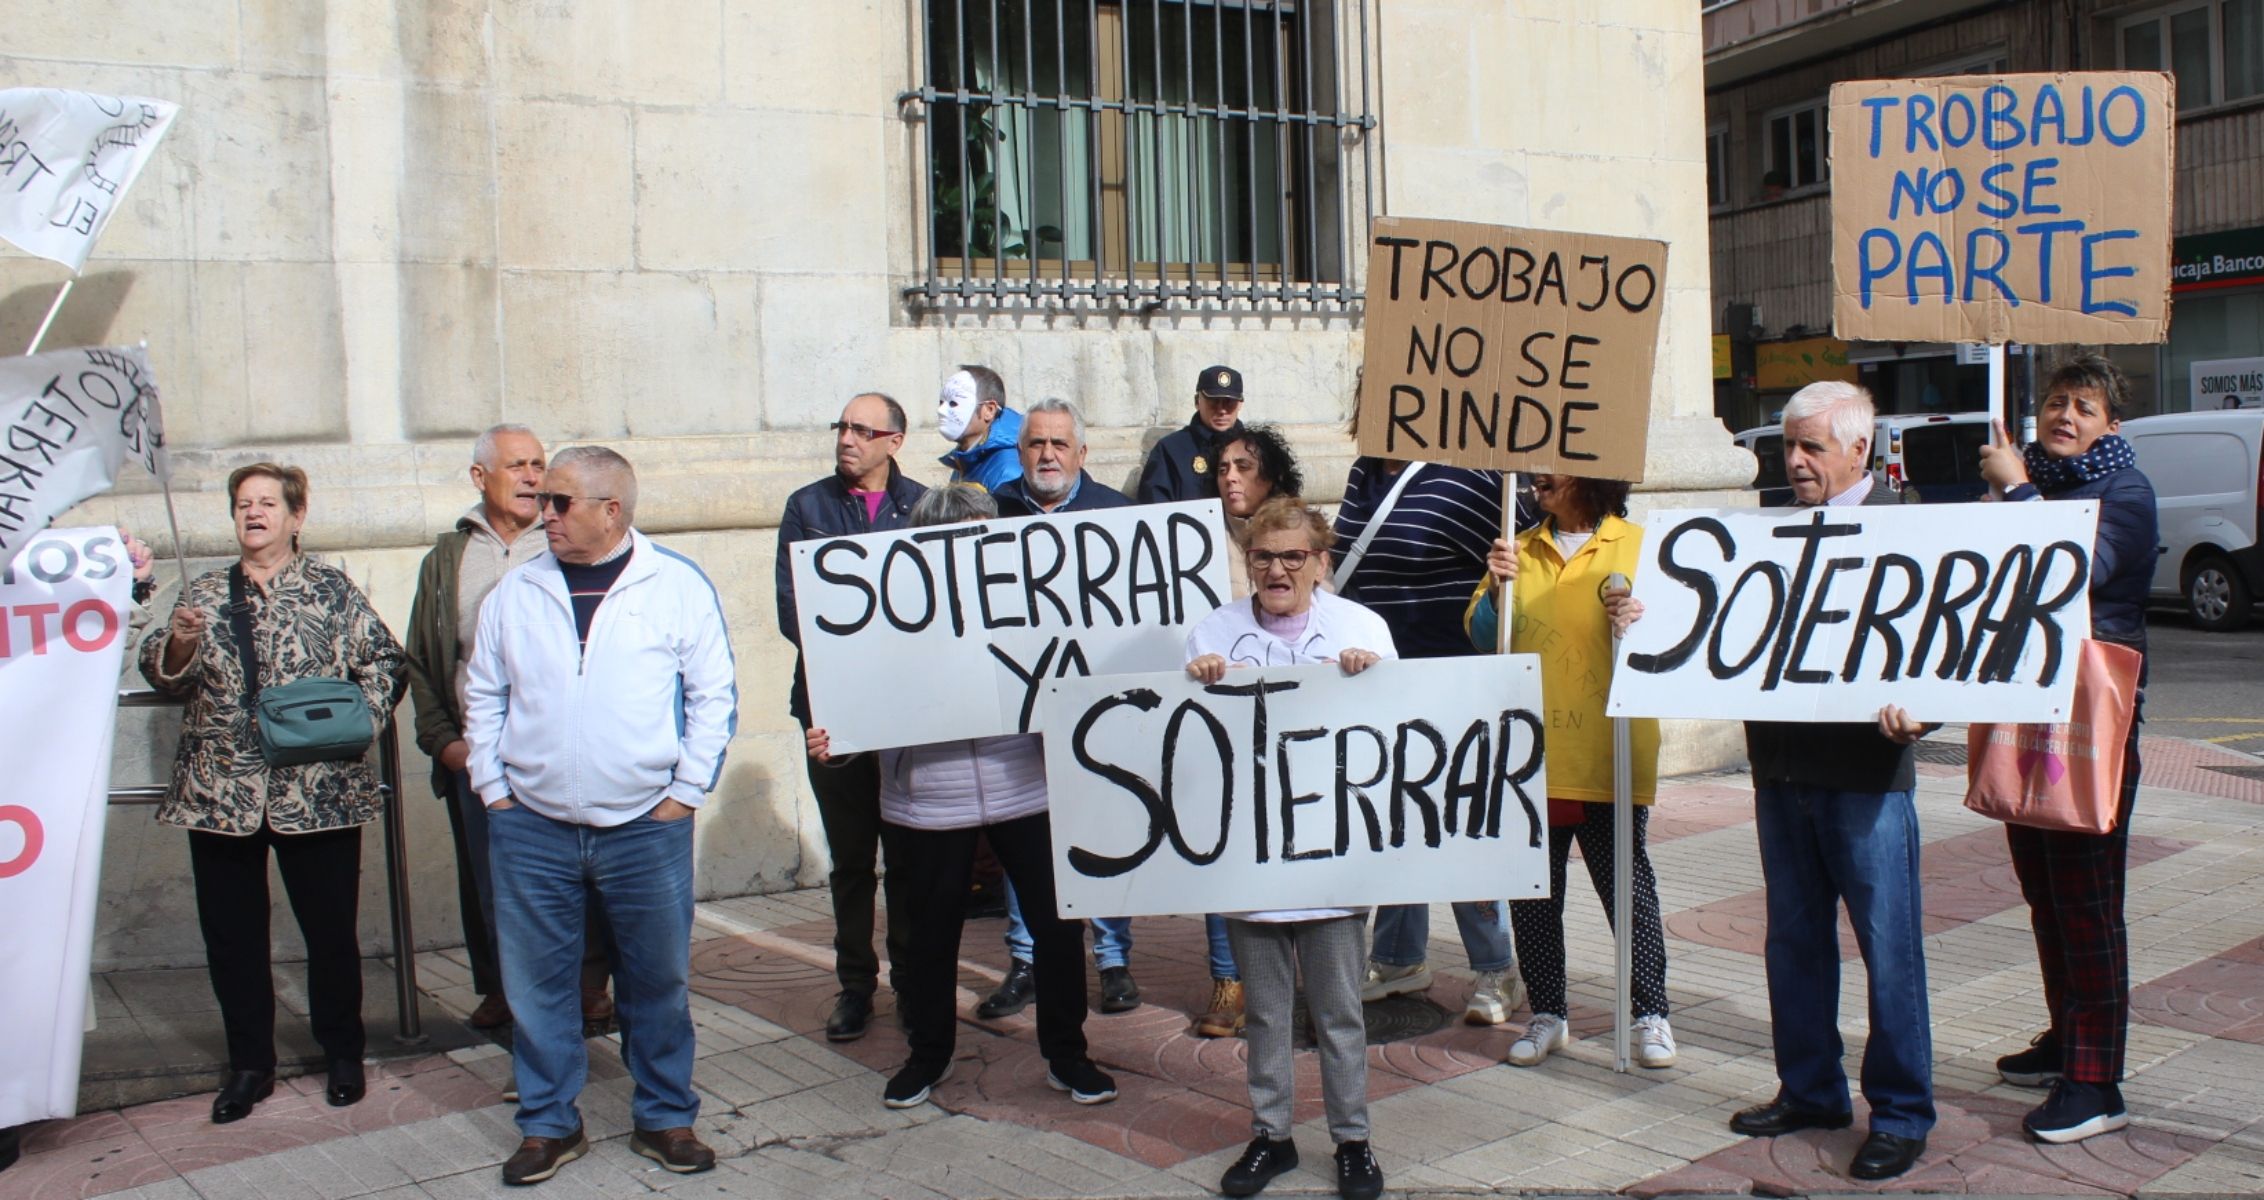 Protesta de los vecinos de Trobajo del Camino por el soterramiento. Foto por Isaac Llamazares